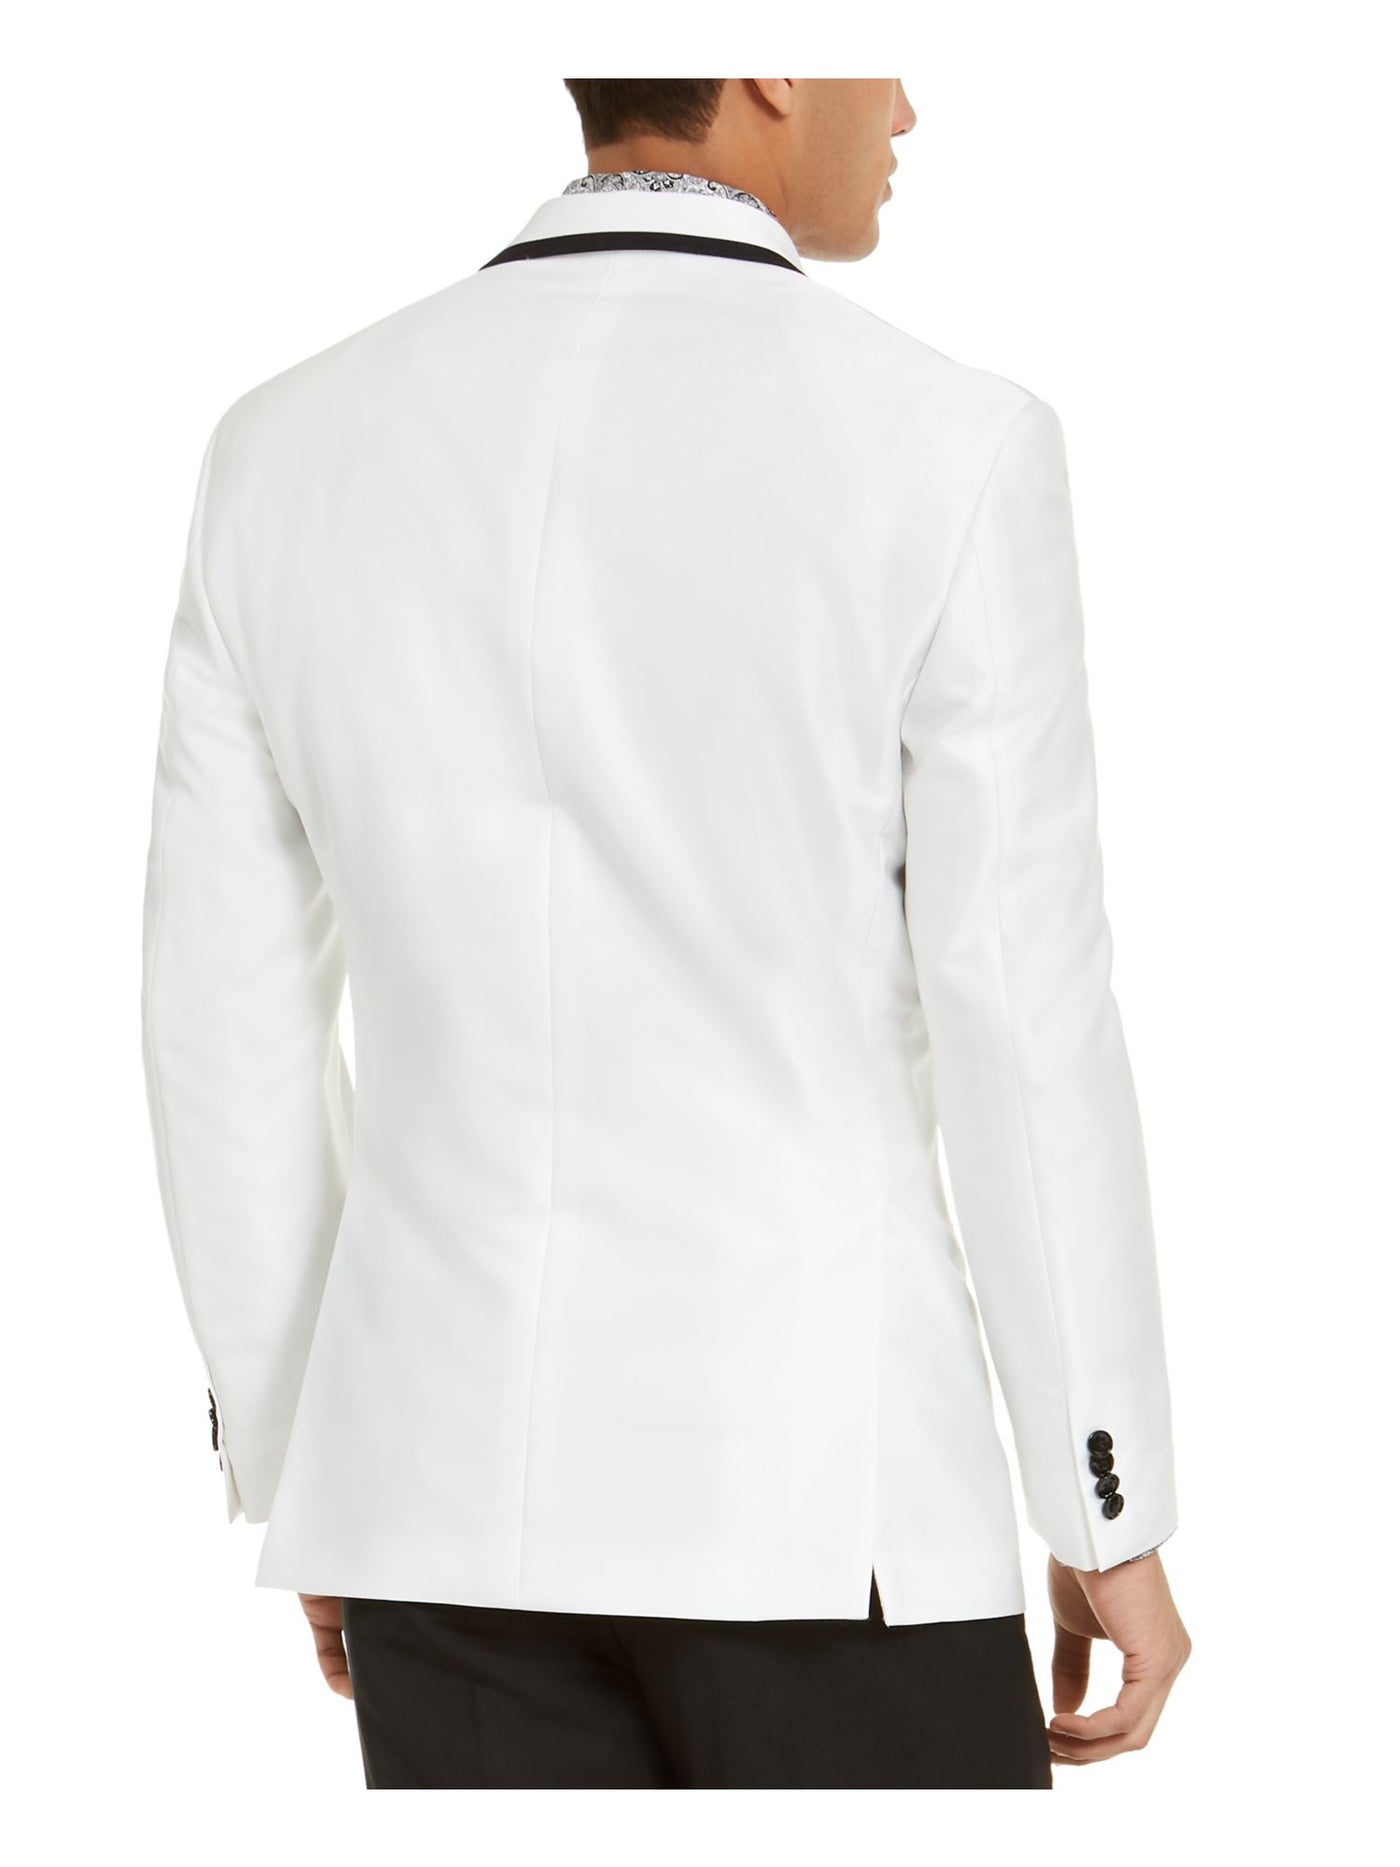 SEANJOHN Mens White Blazer Jacket 36S